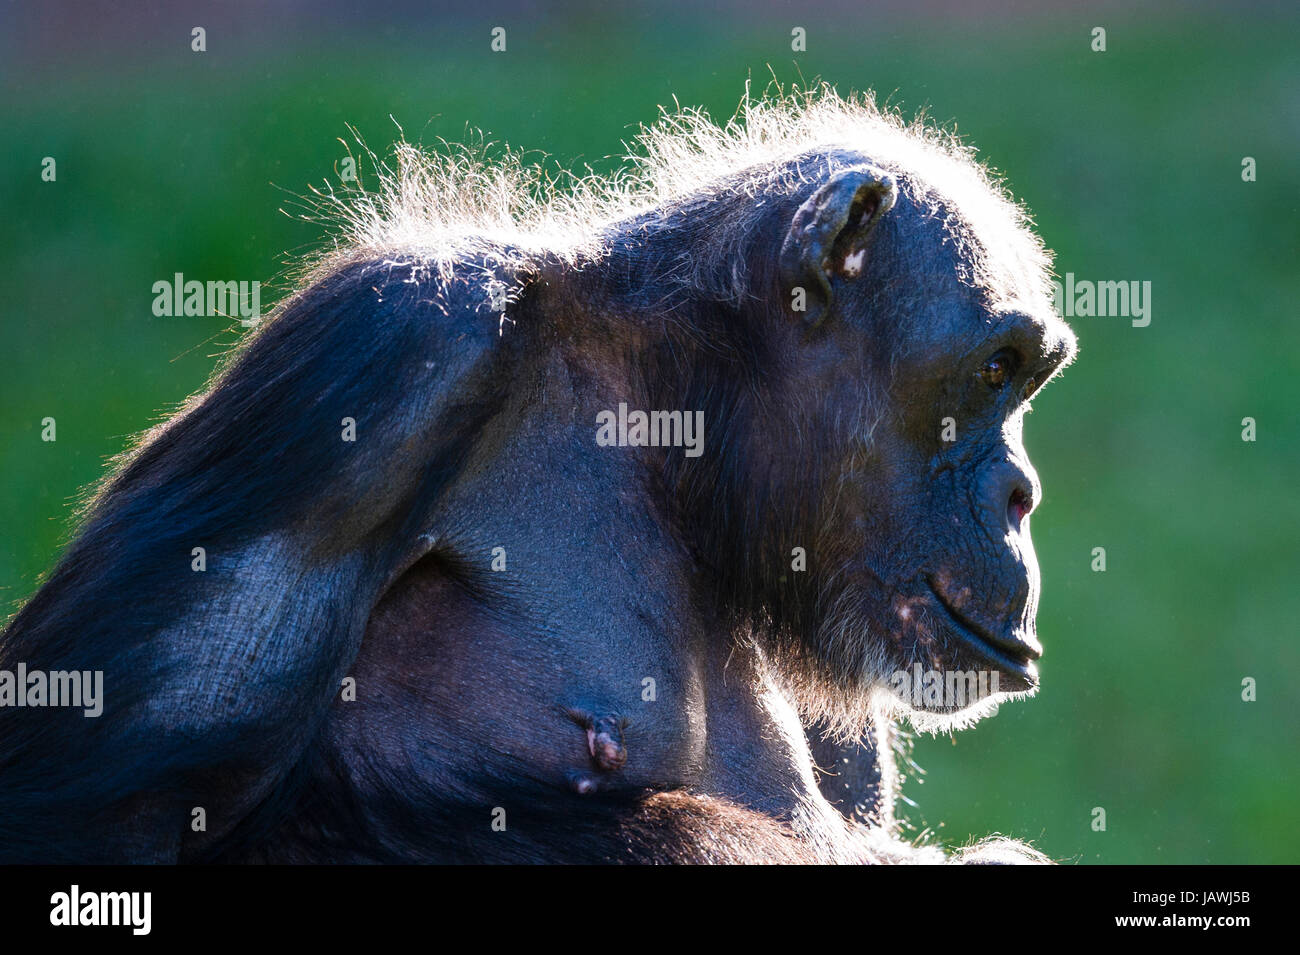 La tête d'un chimpanzé âgée par rétro-éclairé le soleil matinal. Banque D'Images